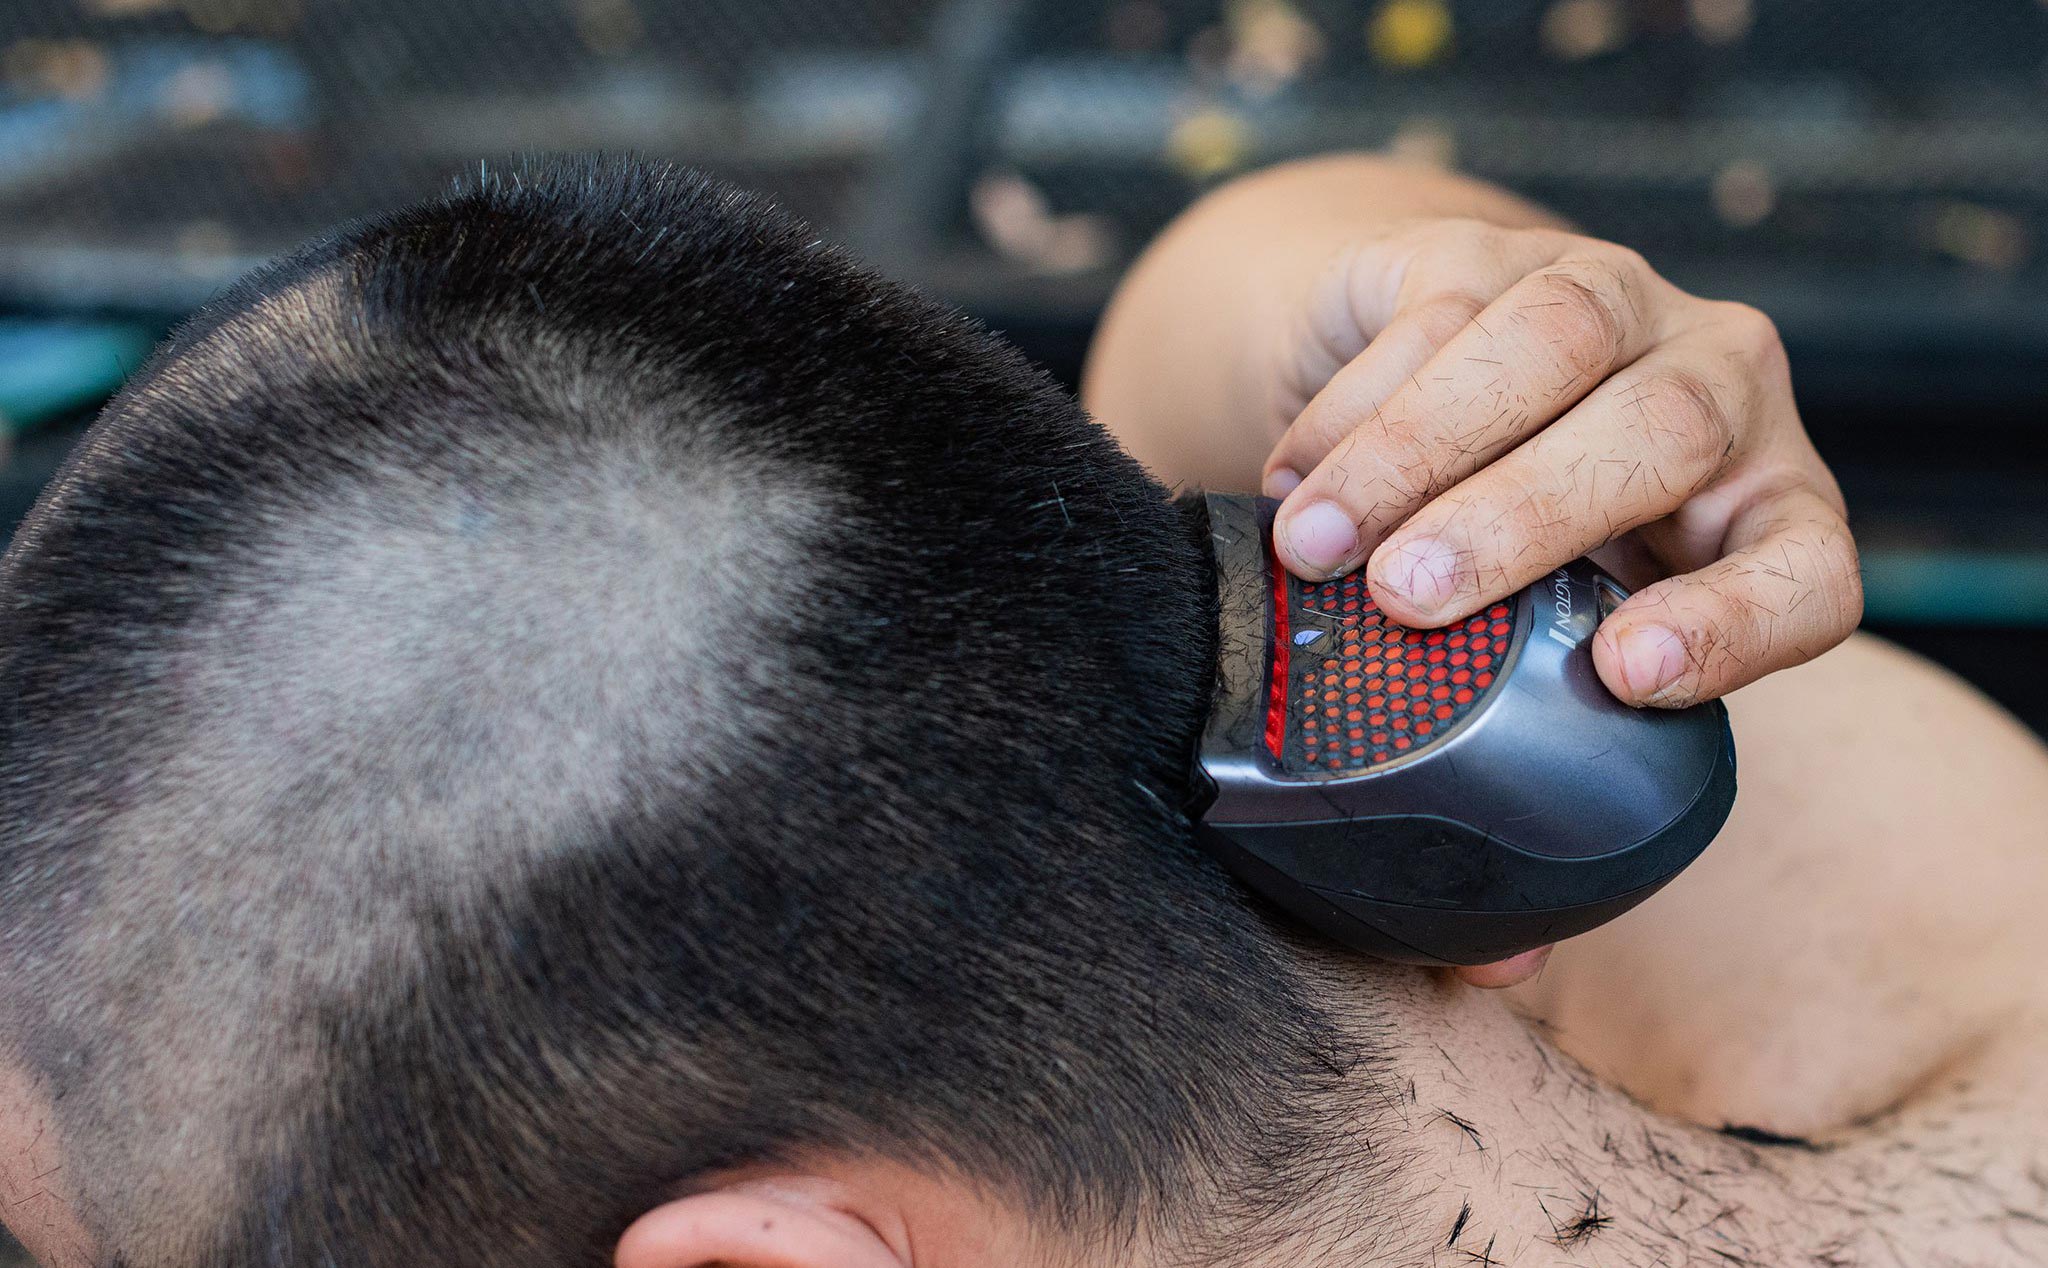 Tông đơ Remington: Sở hữu một máy cắt tóc tốt là yếu tố quan trọng để góp phần tạo nên kiểu tóc đẹp. Hãy xem hình ảnh về tông đơ Remington để có được lựa chọn tốt nhất cho việc cắt tóc của bạn.